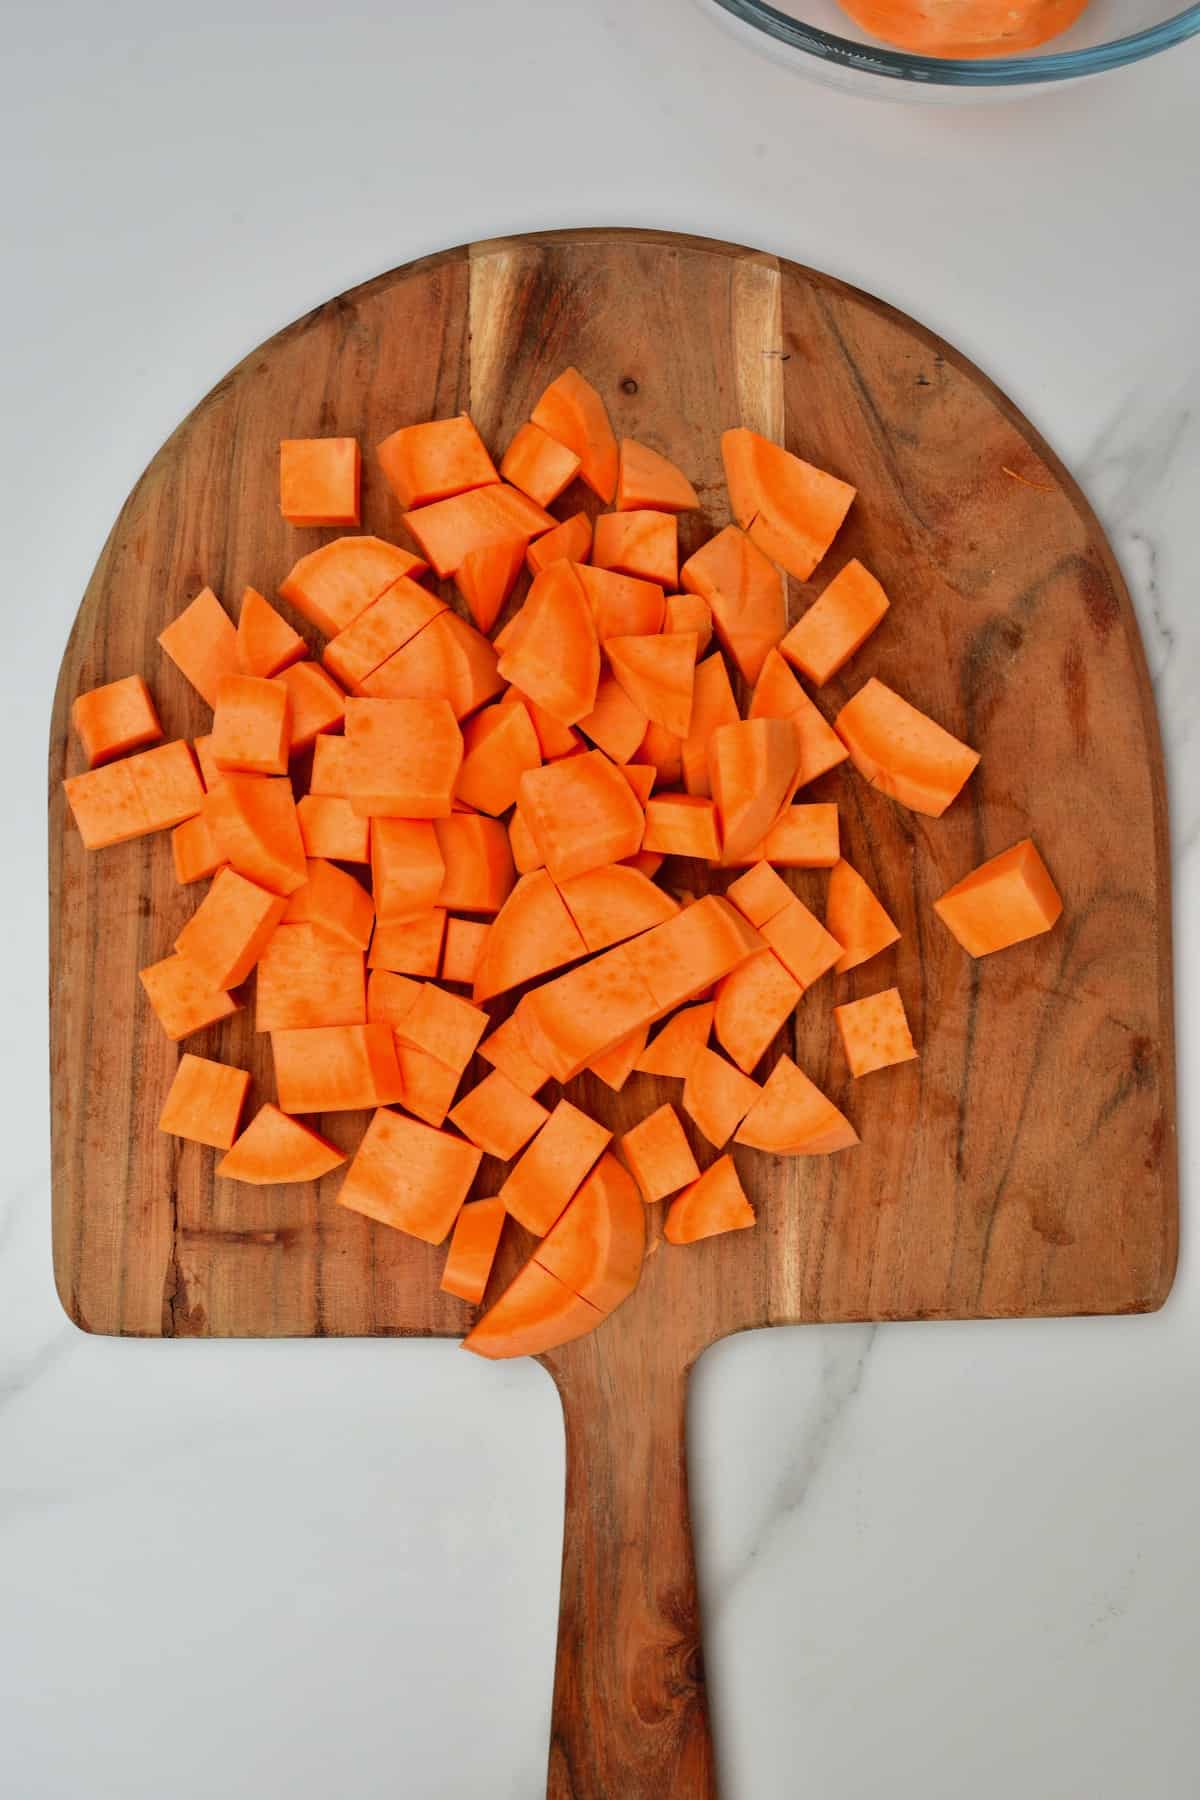 Chopped sweet potato on wooden board